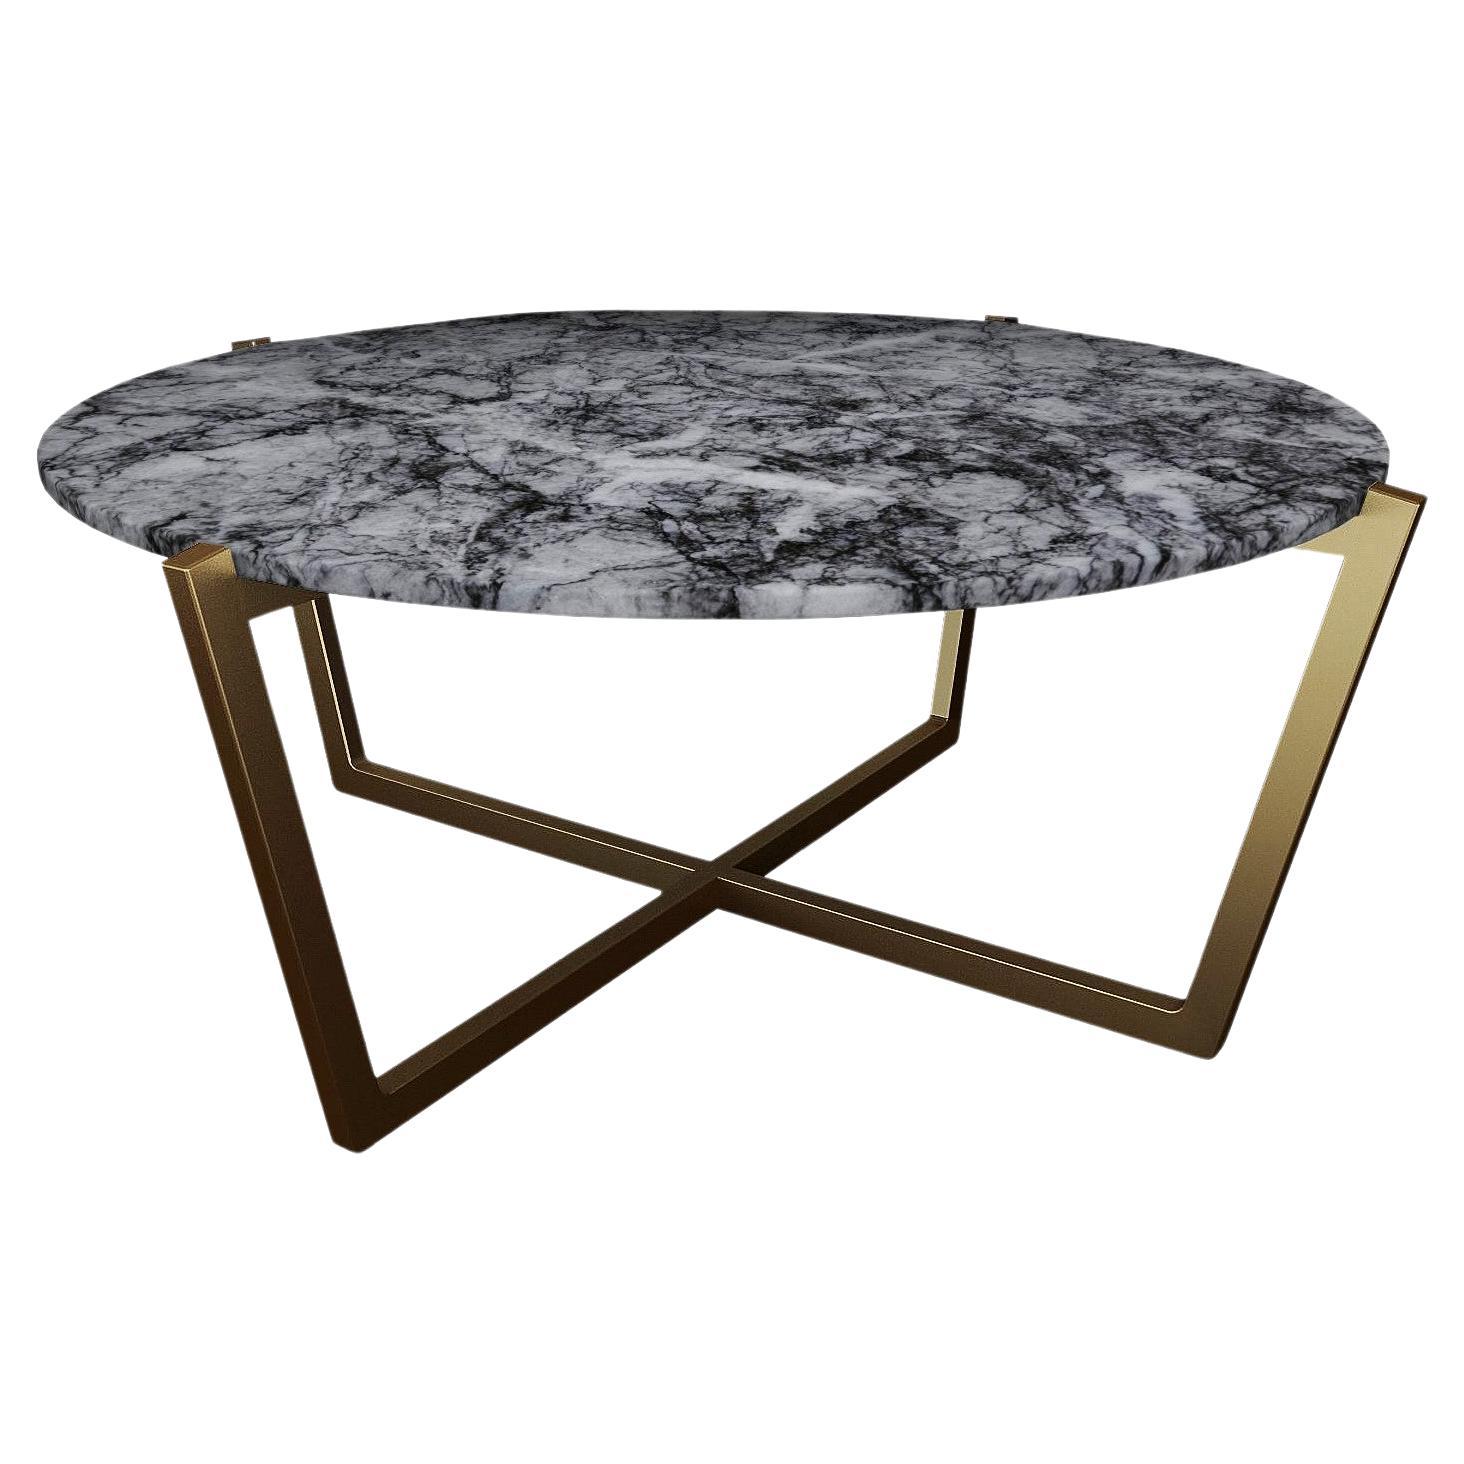 Table basse NORDST EMMA, marbre gris Rain italien, design moderne danois, nouveau en vente